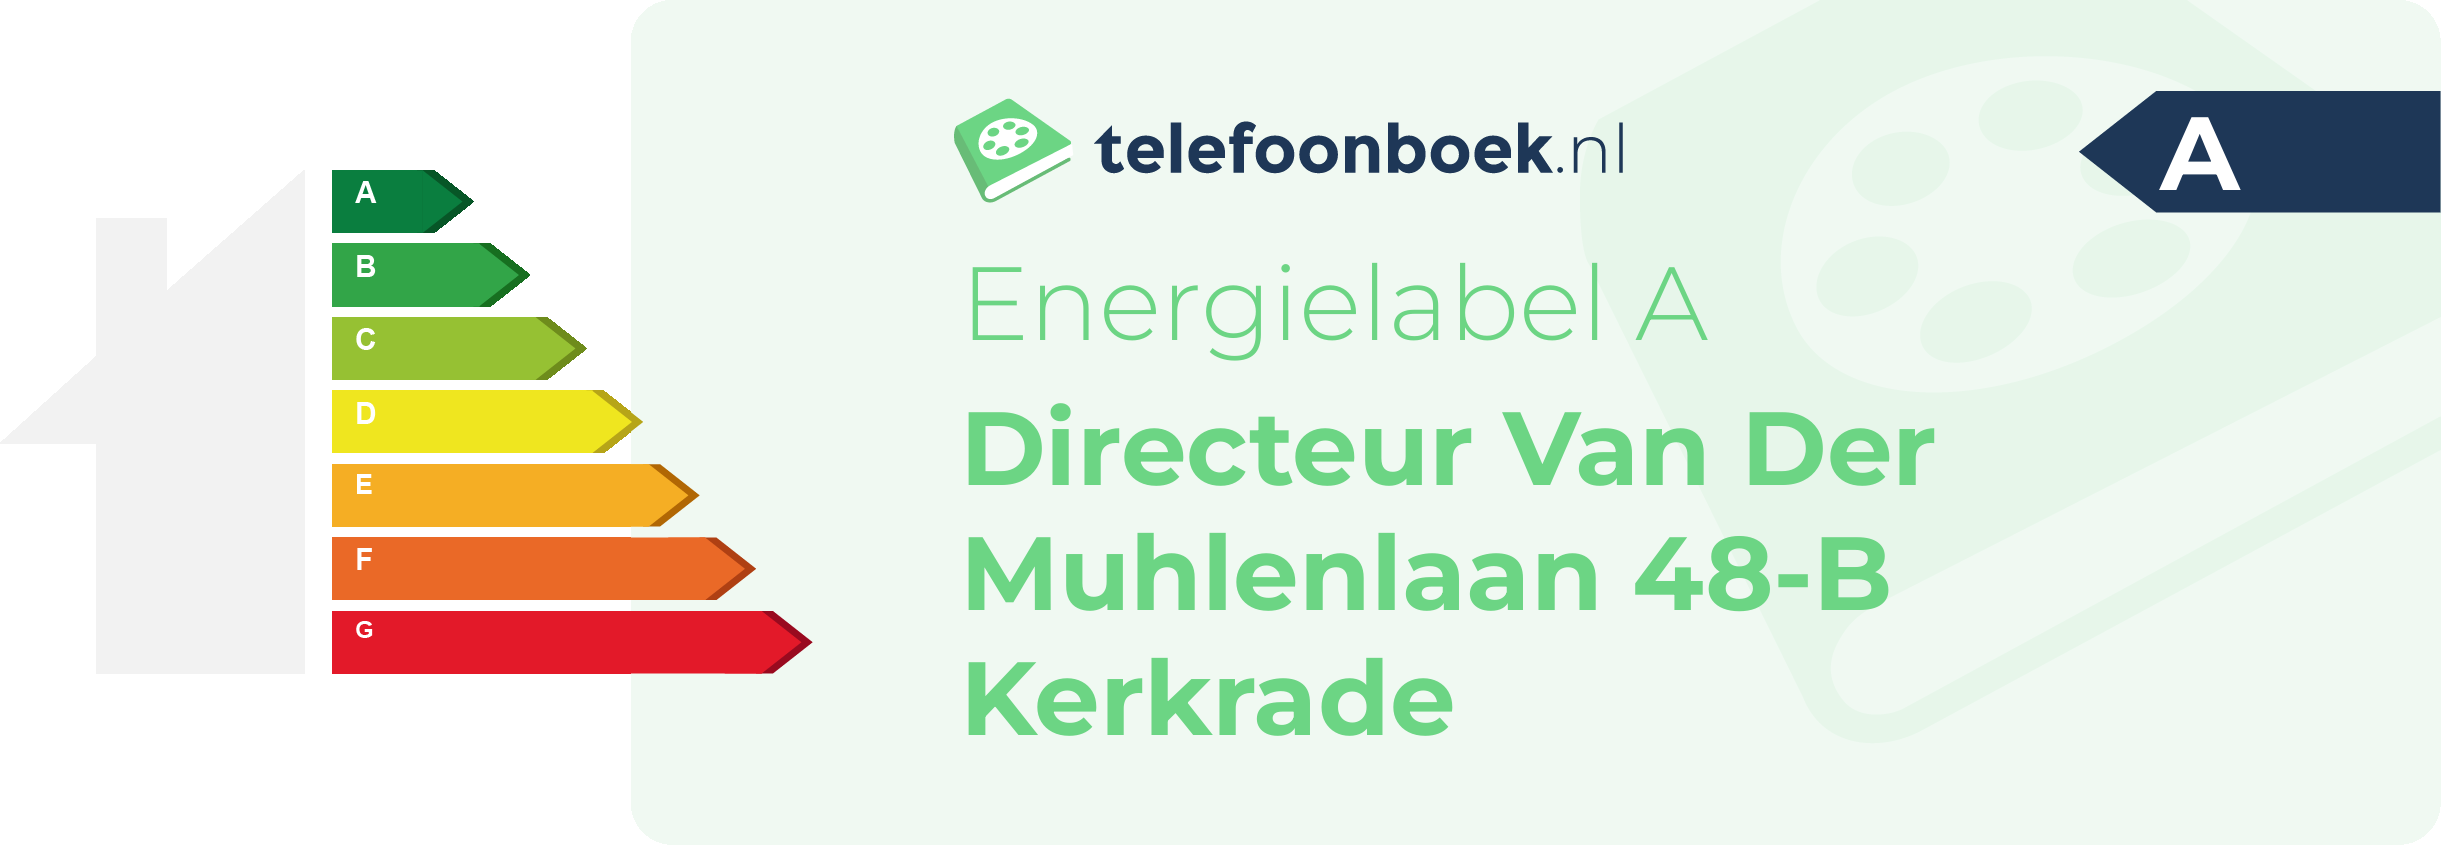 Energielabel Directeur Van Der Muhlenlaan 48-B Kerkrade